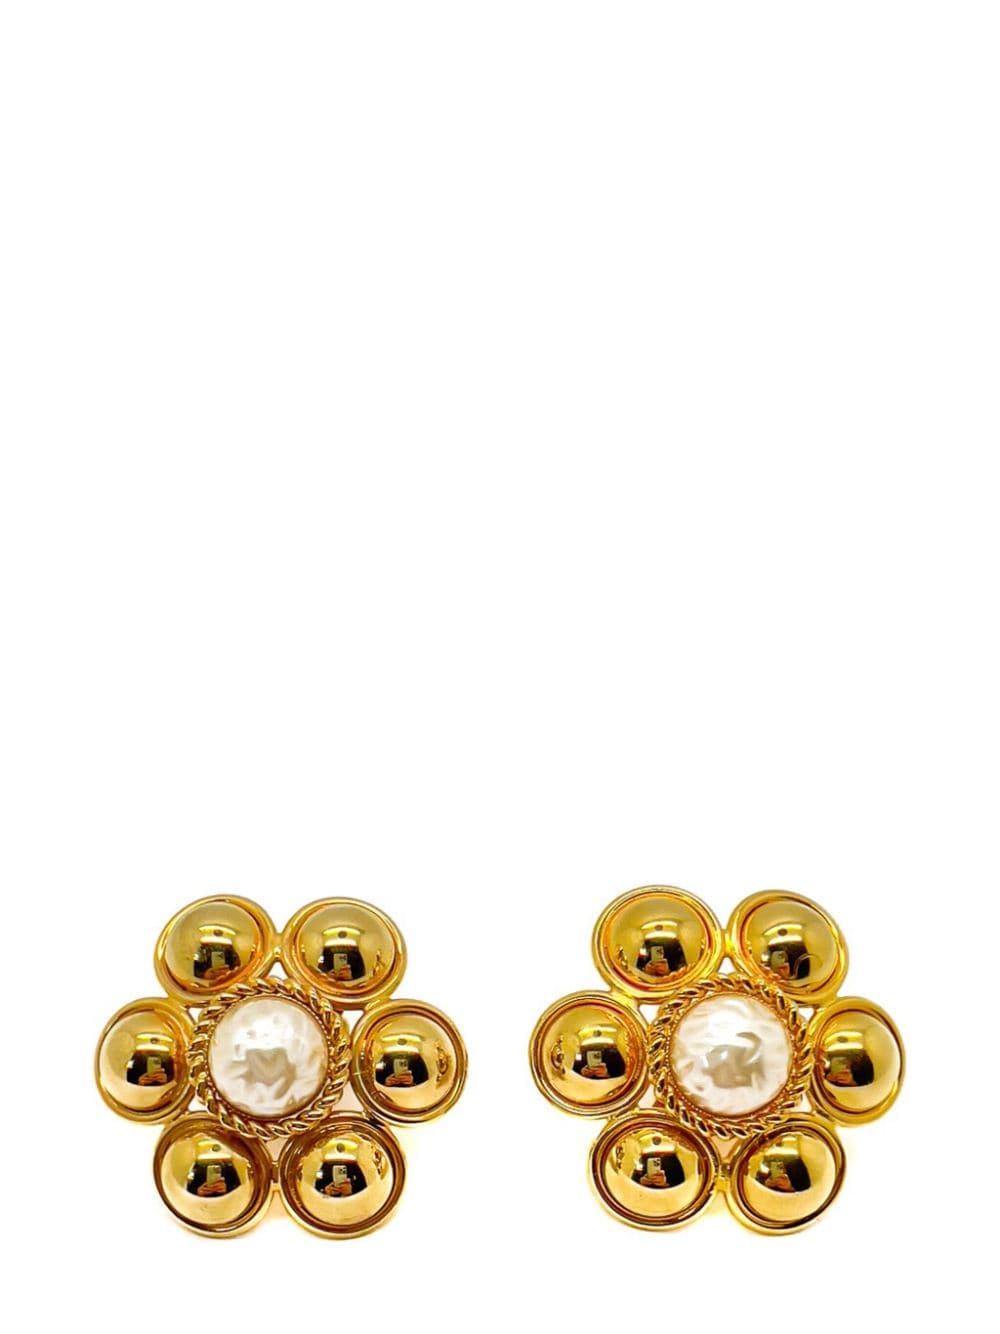 Jennifer Gibson Jewellery Vintage Statement Gold & Pearl Flower Earrings 1960s von Jennifer Gibson Jewellery